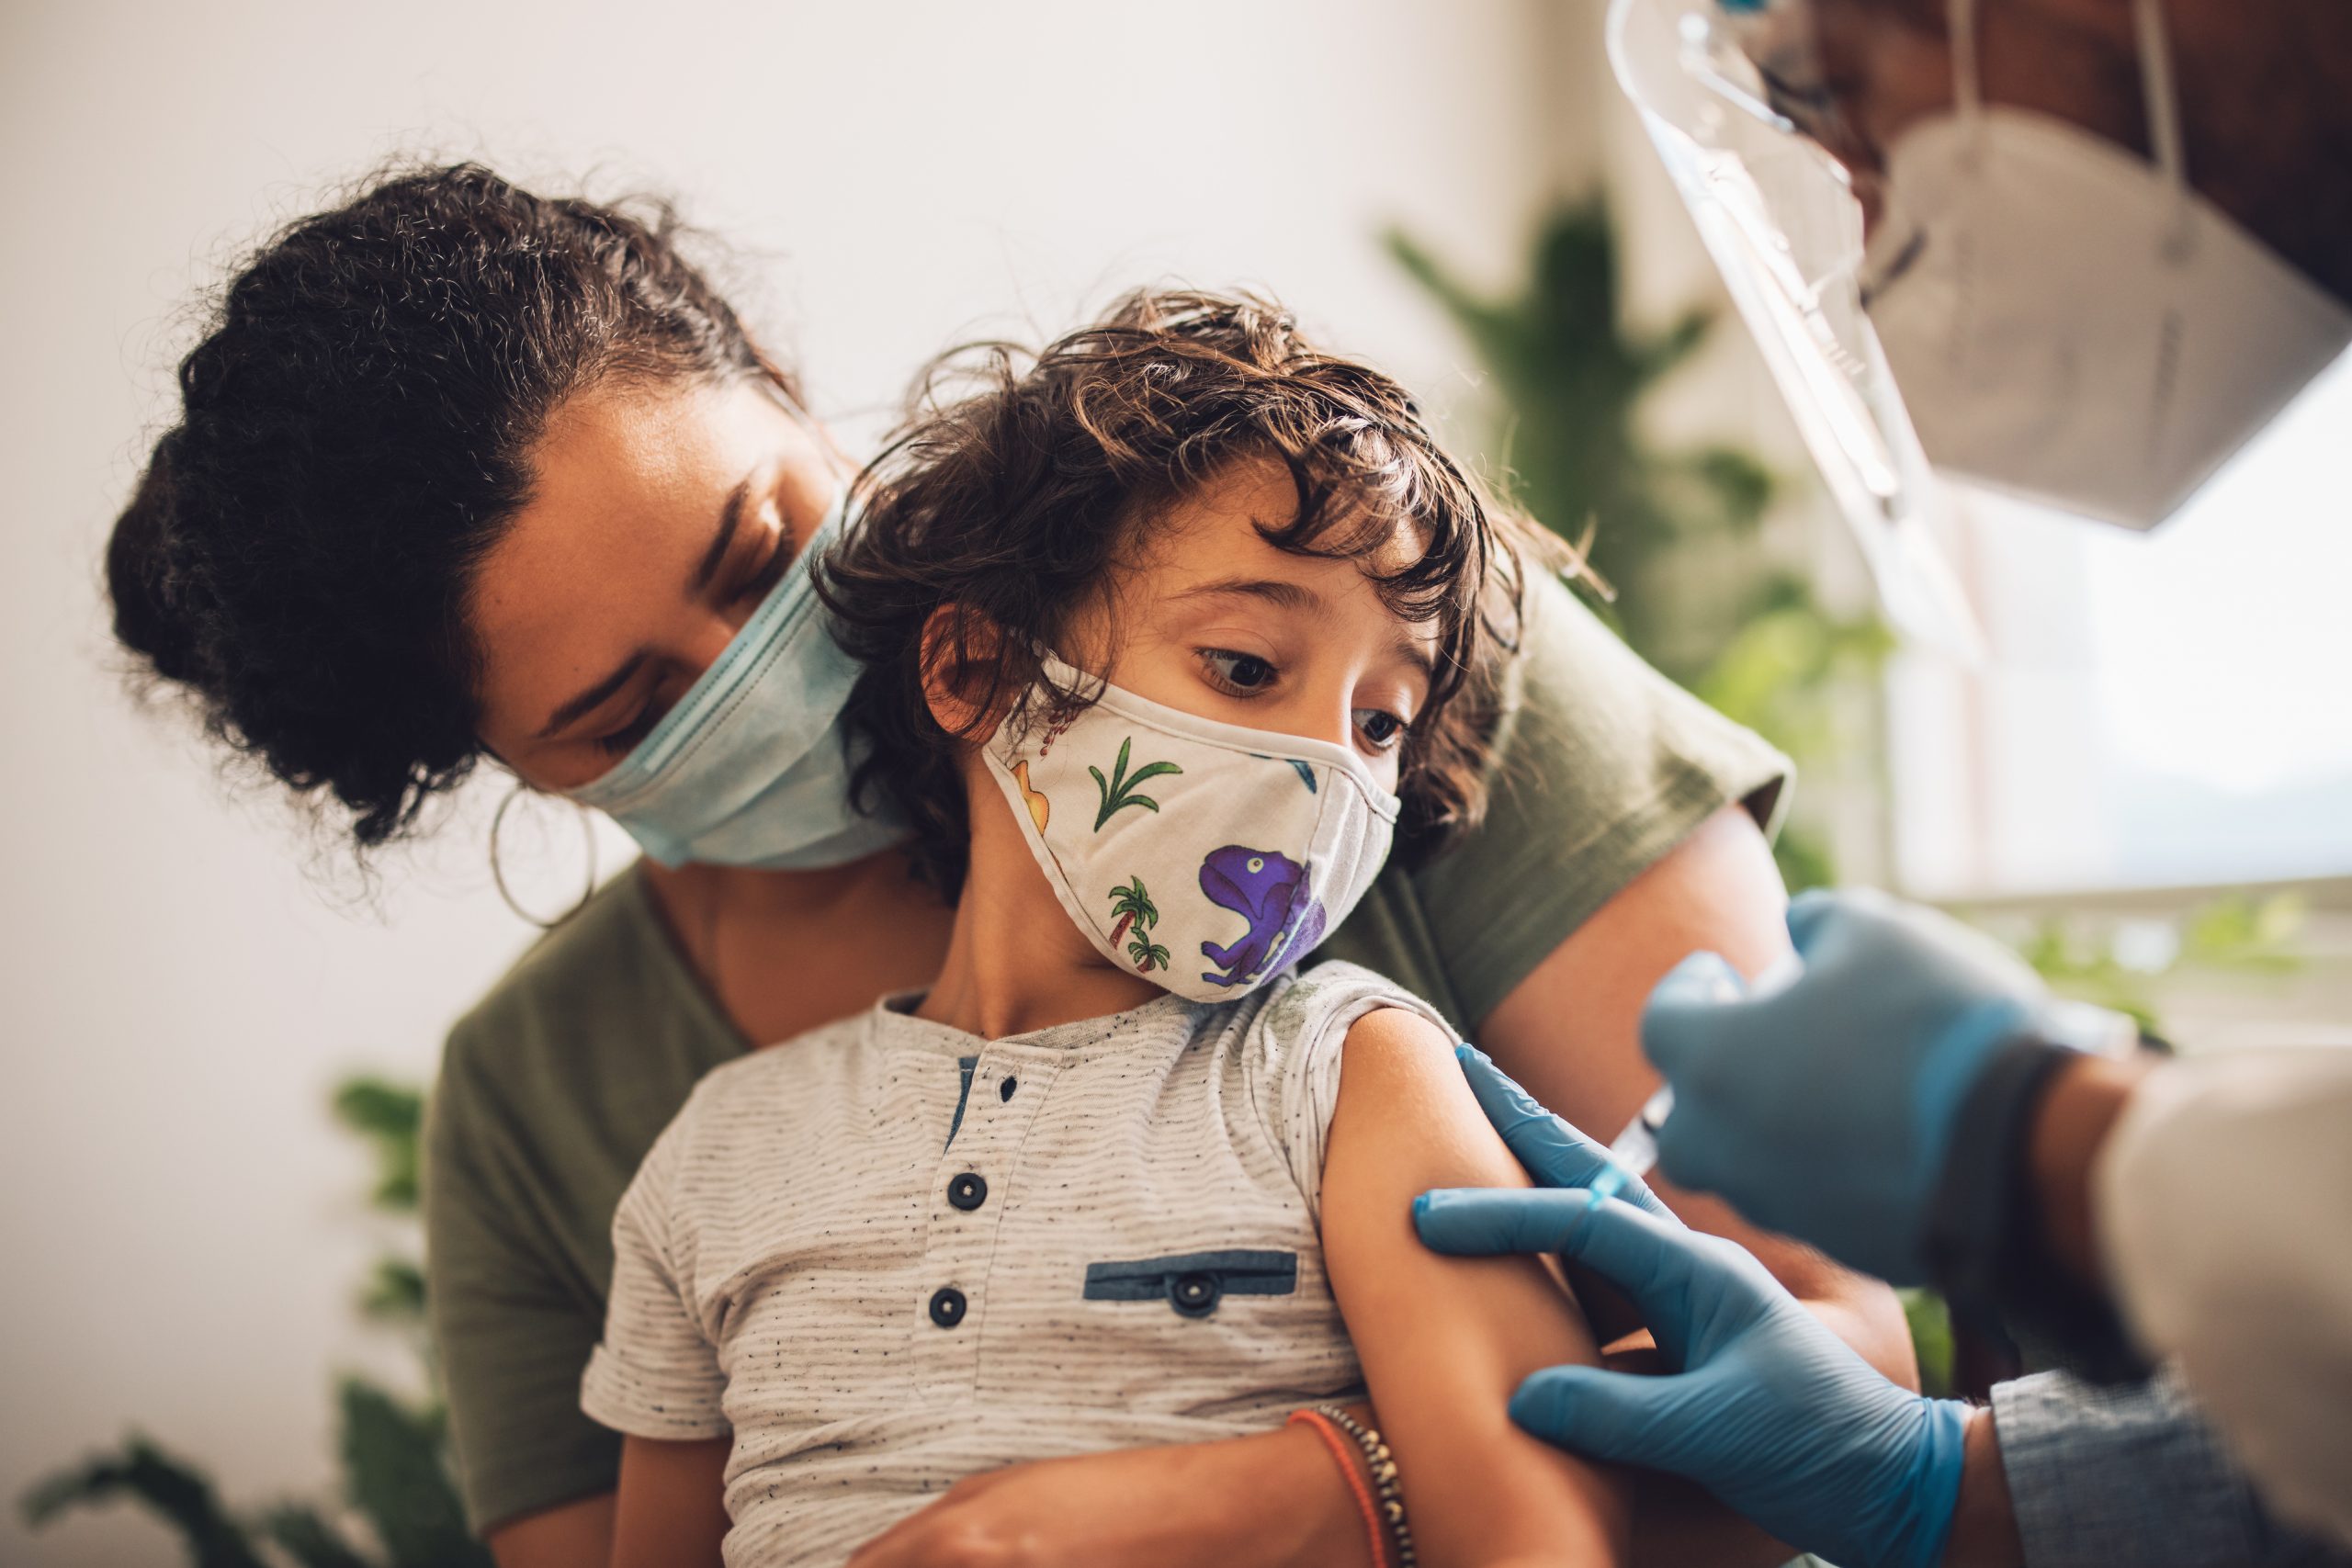 Governo apresenta plano para vacinar todas as crianças de SP em 3 semanas |  Governo do Estado de São Paulo